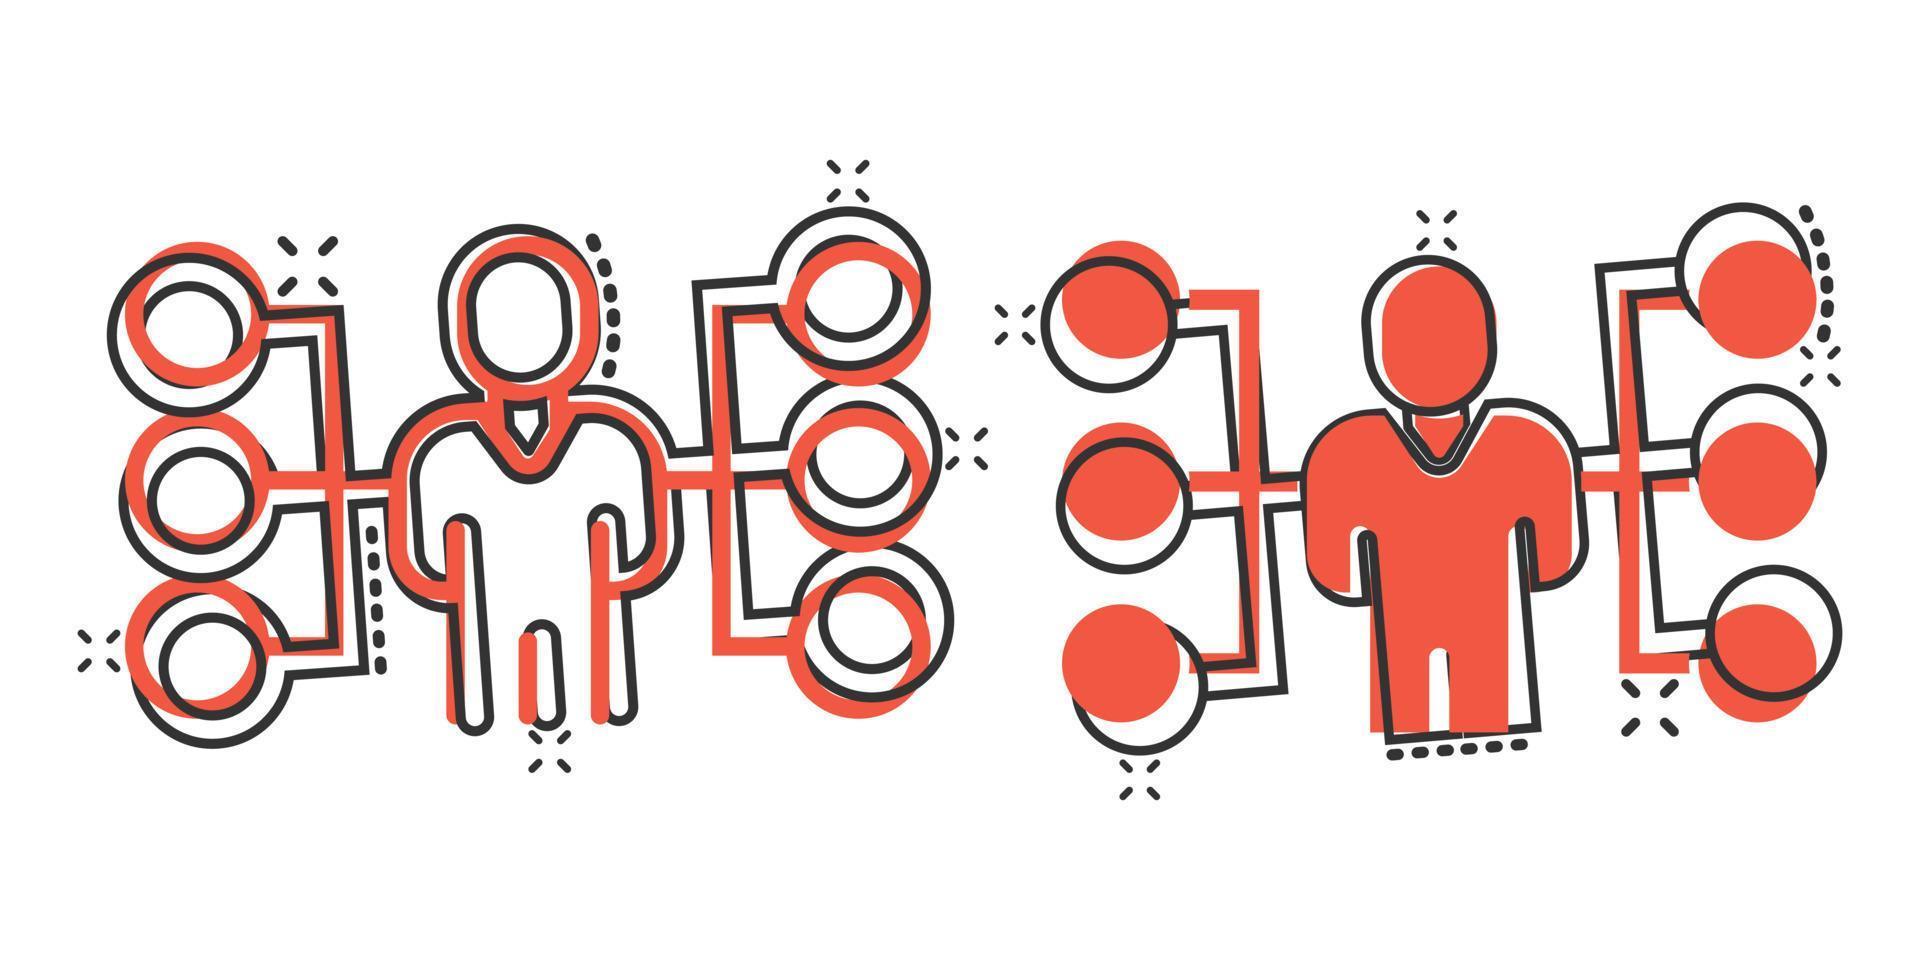 Corporate Organigramm Menschen Vektor Icon im Comic-Stil. leute zusammenarbeitskarikaturillustration auf weißem hintergrund. Teamwork-Splash-Effekt-Geschäftskonzept.